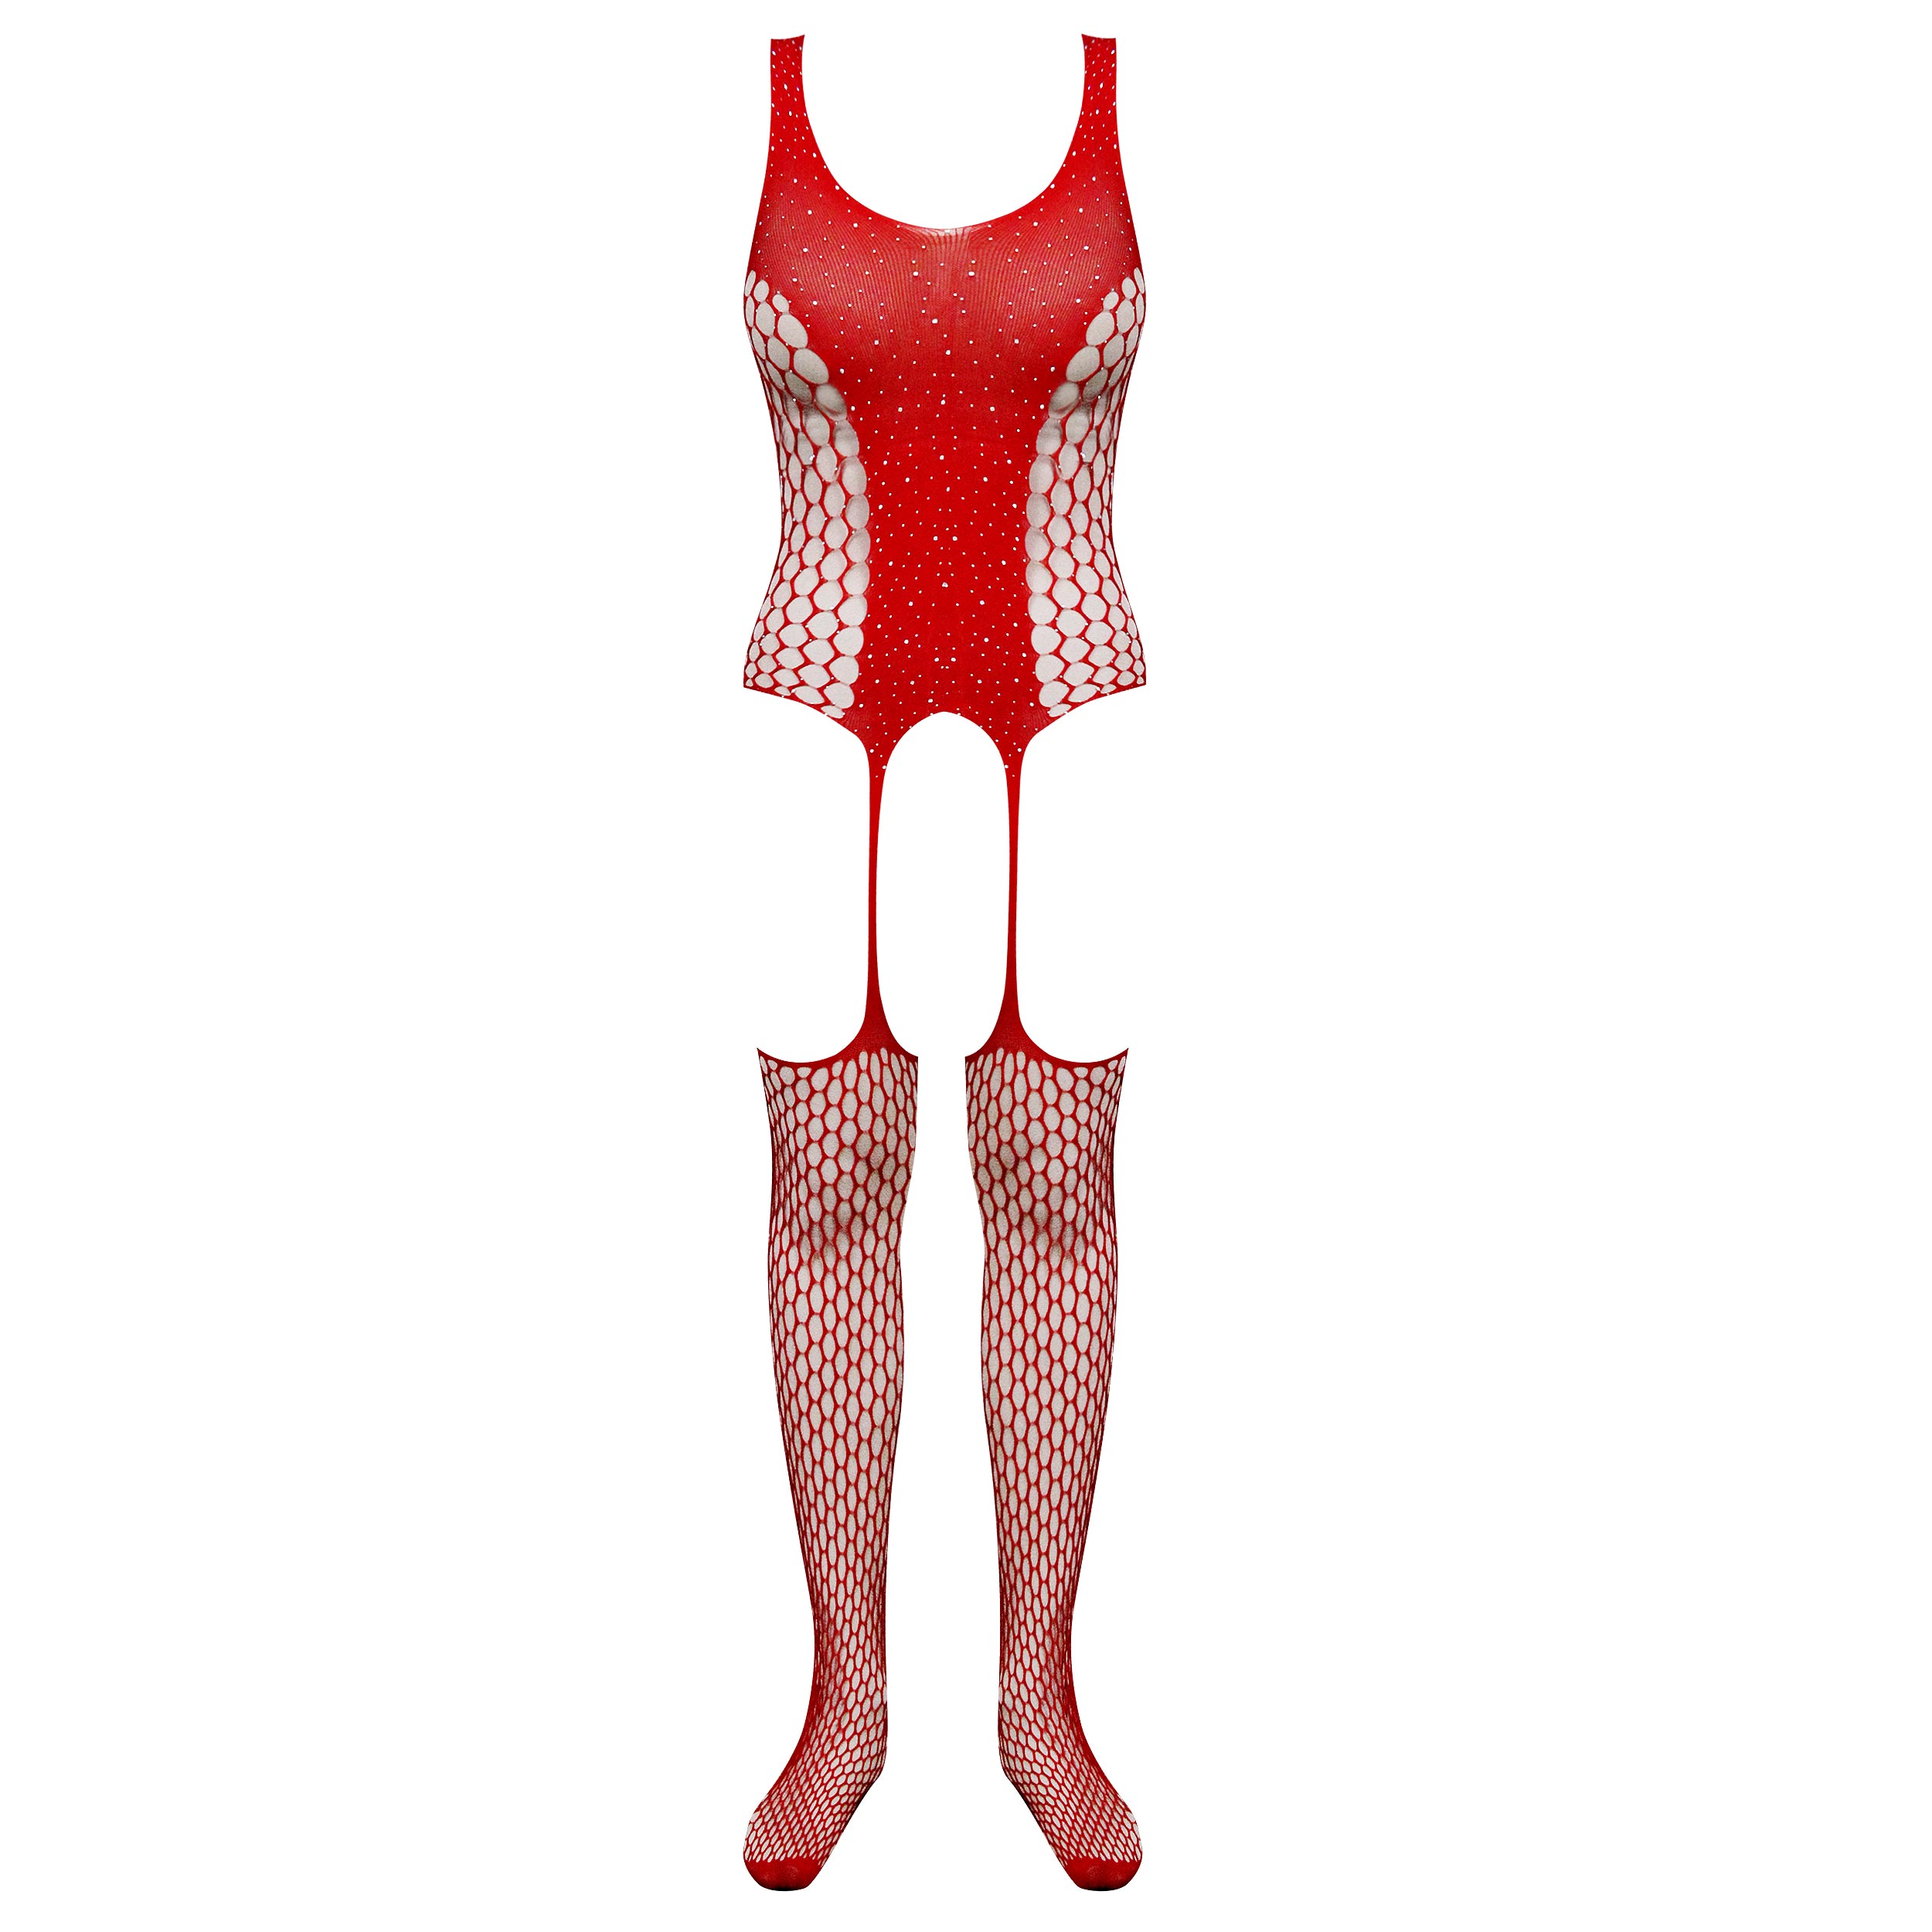 لباس خواب زنانه ماییلدا مدل نگین دار فانتزی کد 4860-7017 رنگ قرمز -  - 1